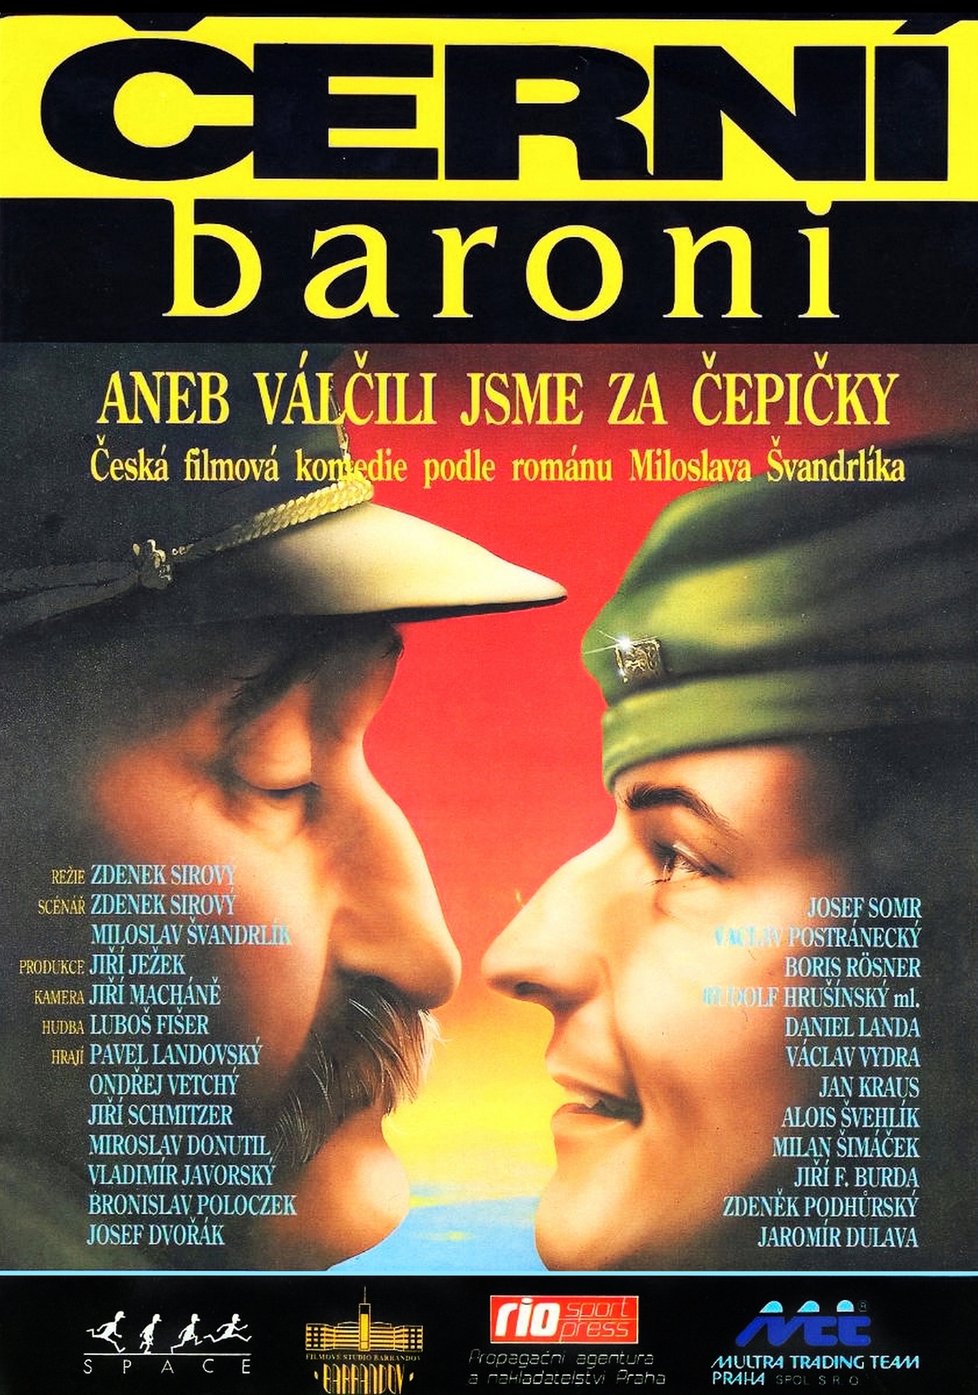 Plakát, který v červnu 1992 lákal diváky do kin na film.